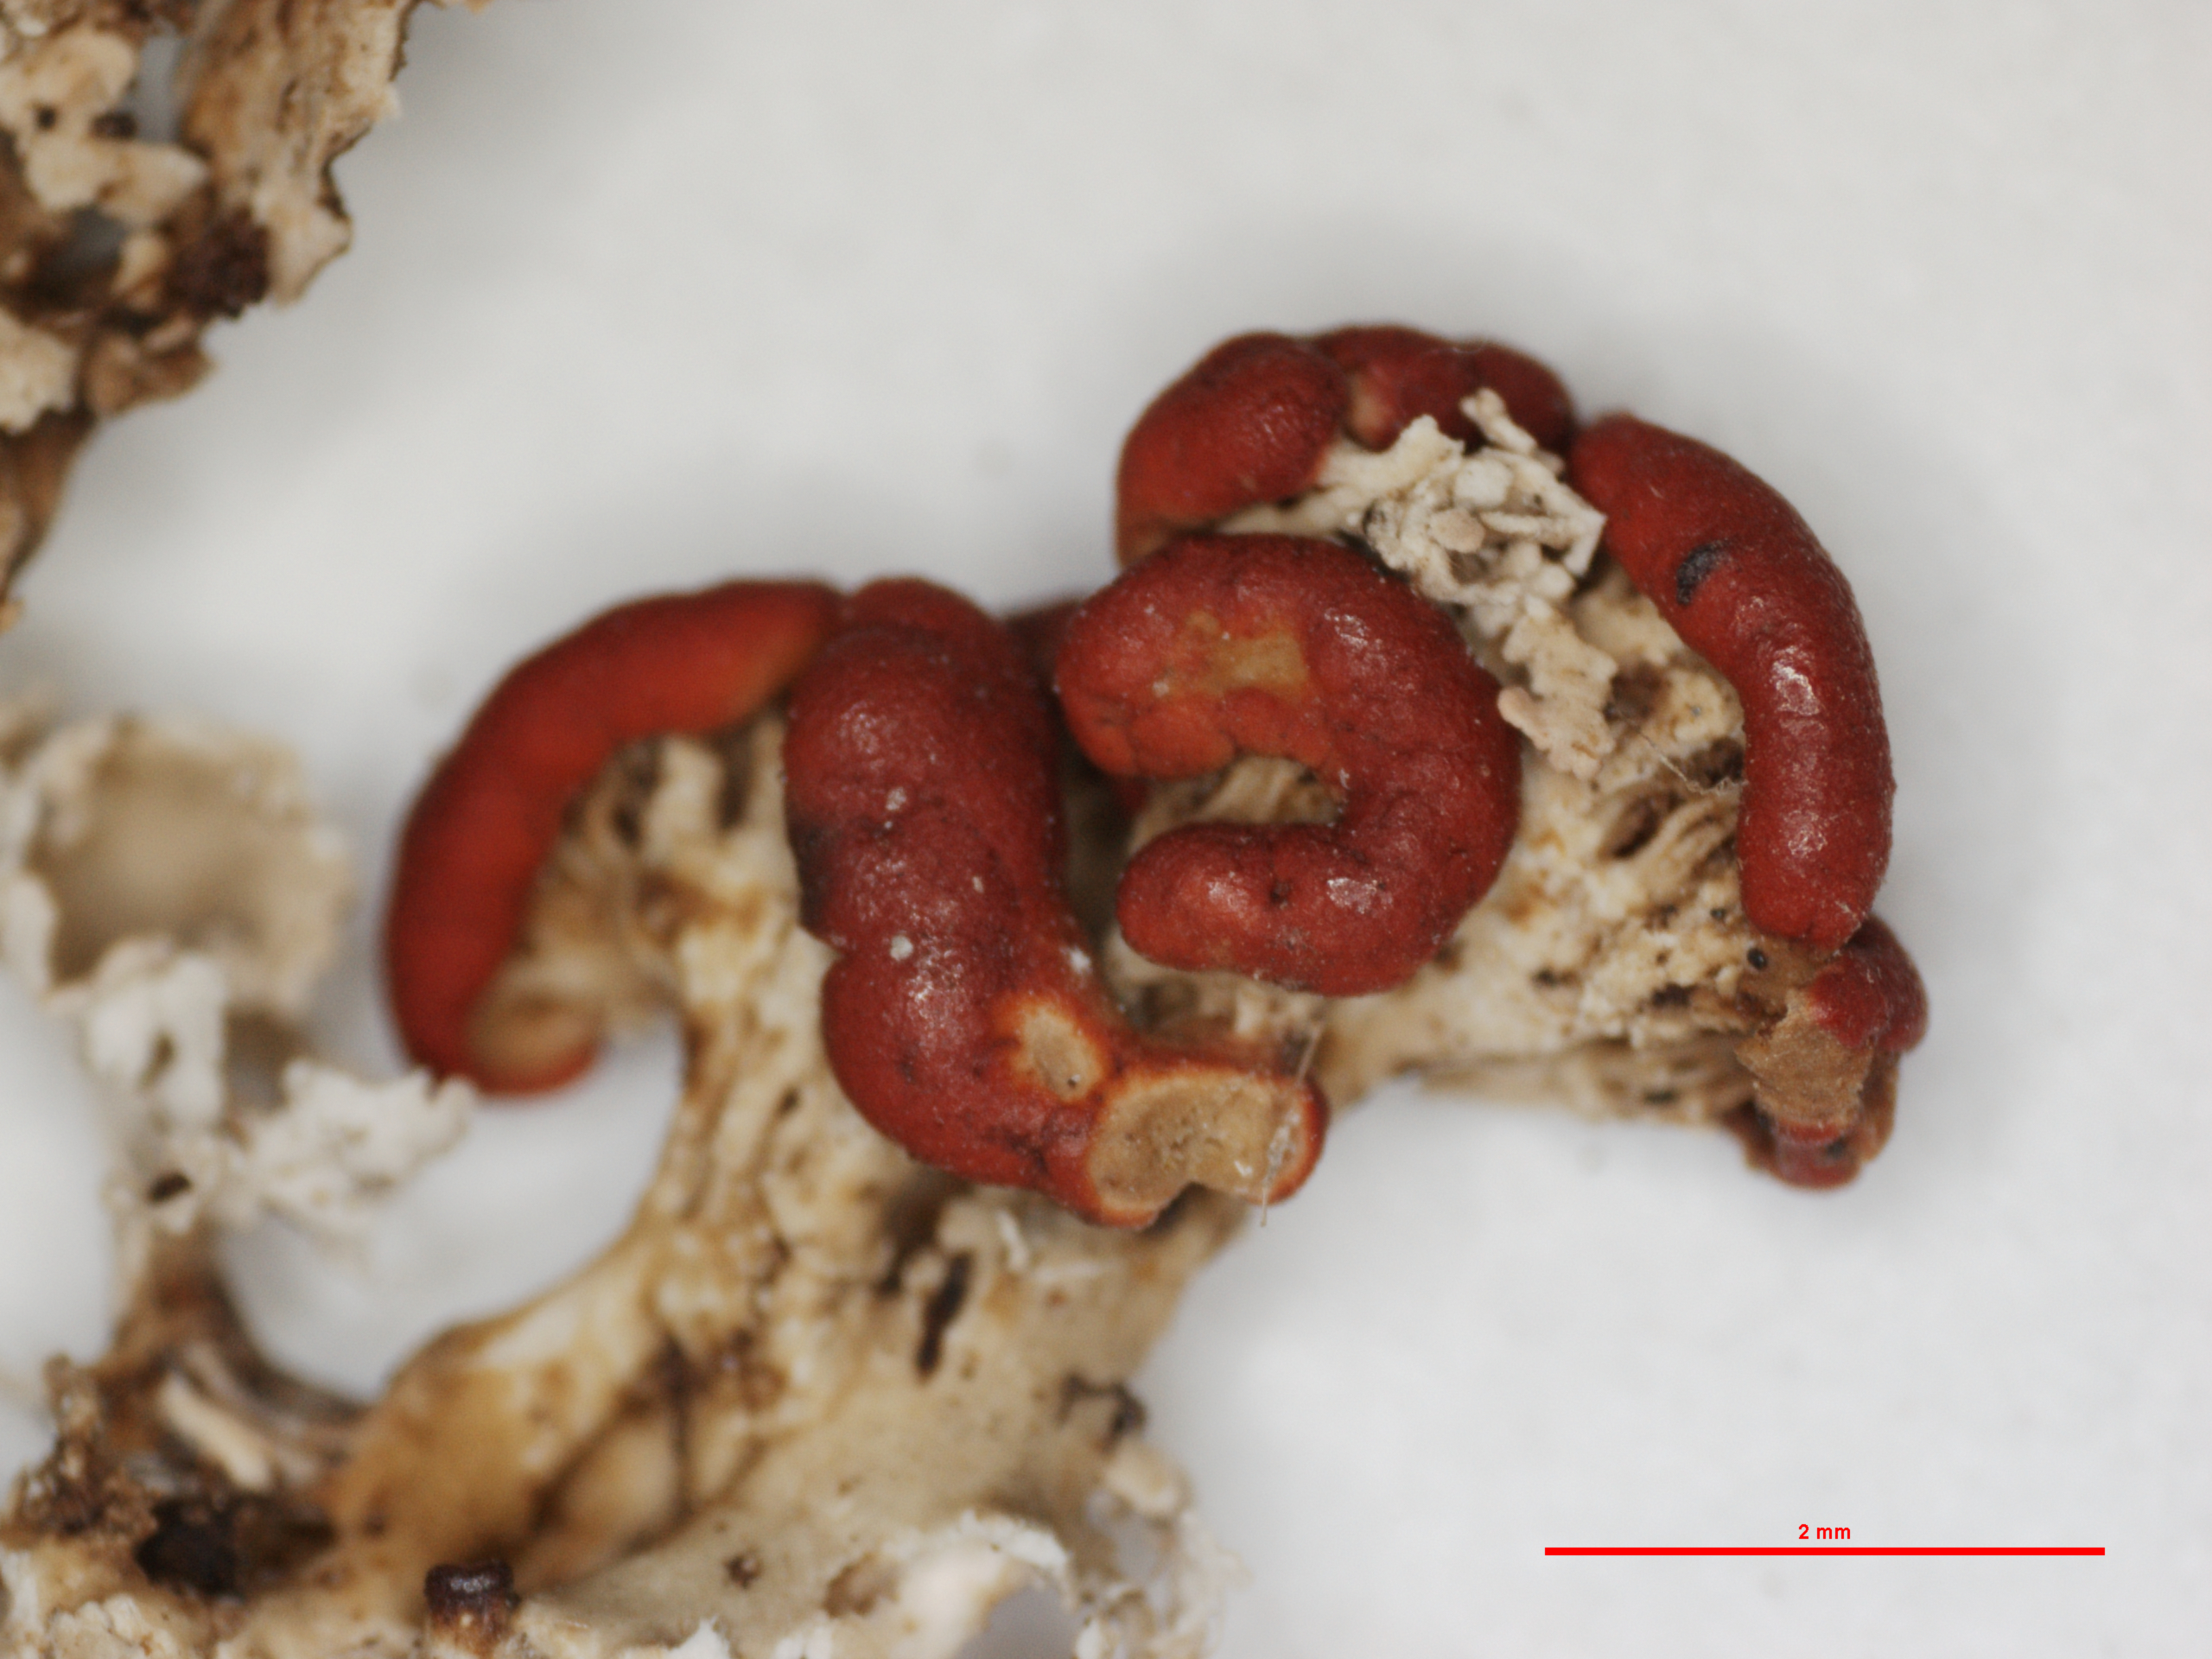 Cladonia transcendens f. squamulosa image